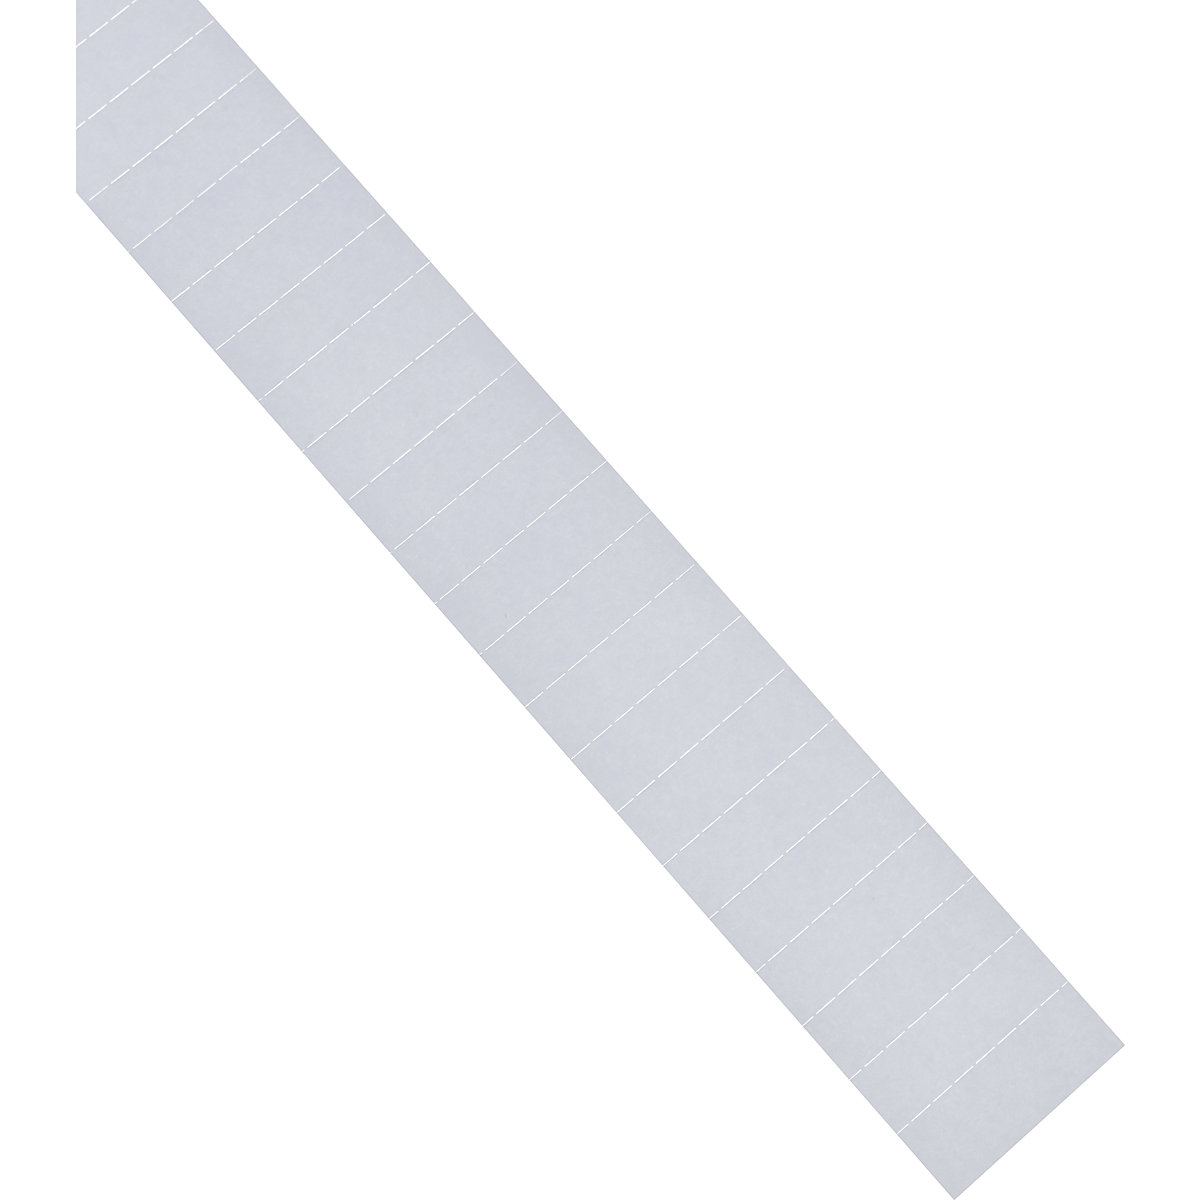 Utične kartice – magnetoplan, 60 mm, pak. 630 kom., u bijeloj boji-6